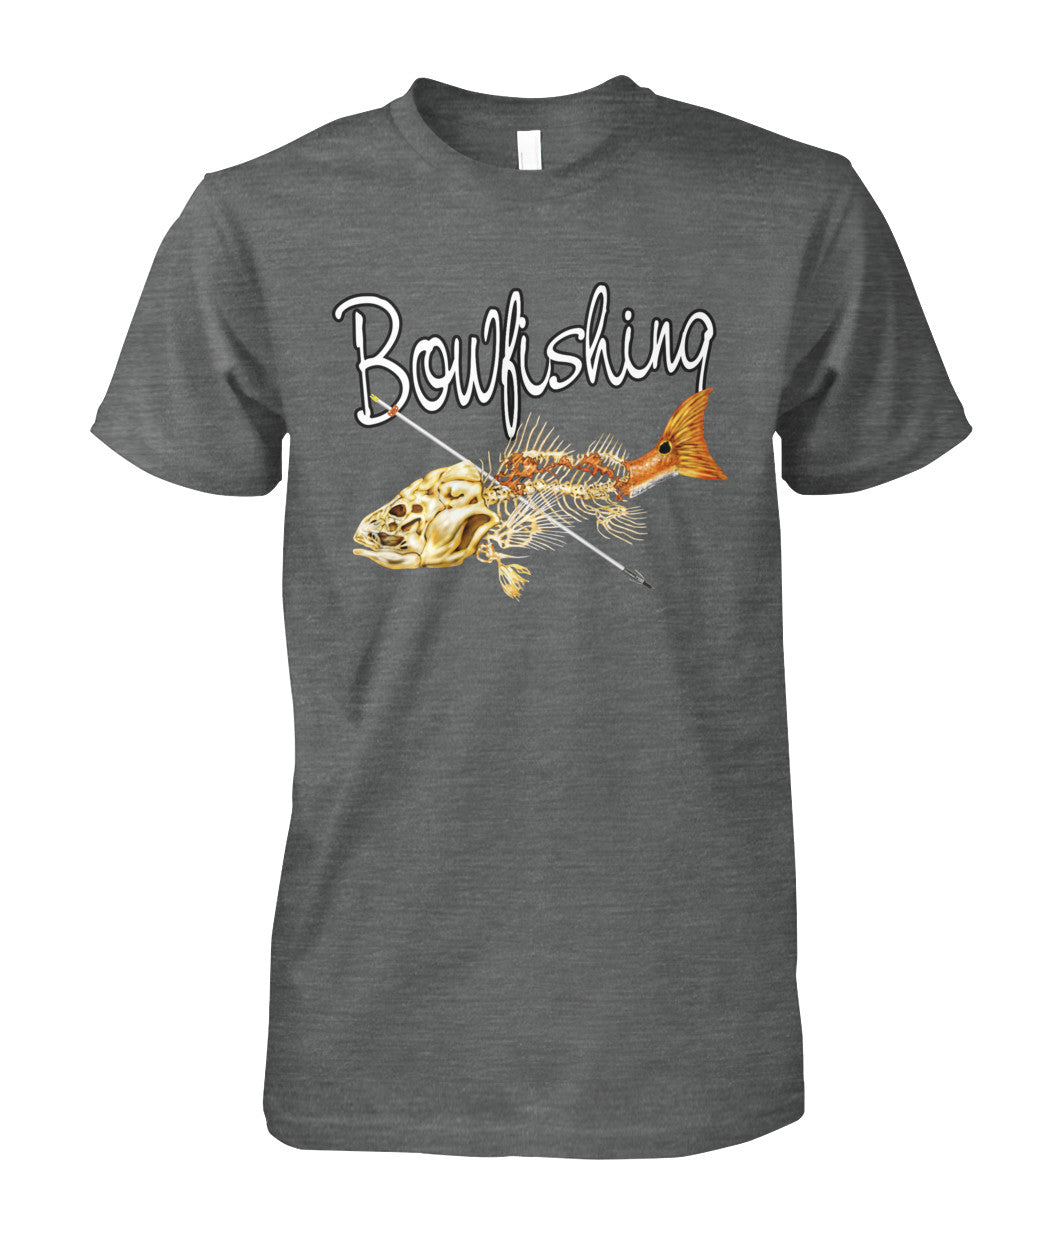 Extream Bowfishing Tee Shirt - ViralStyle